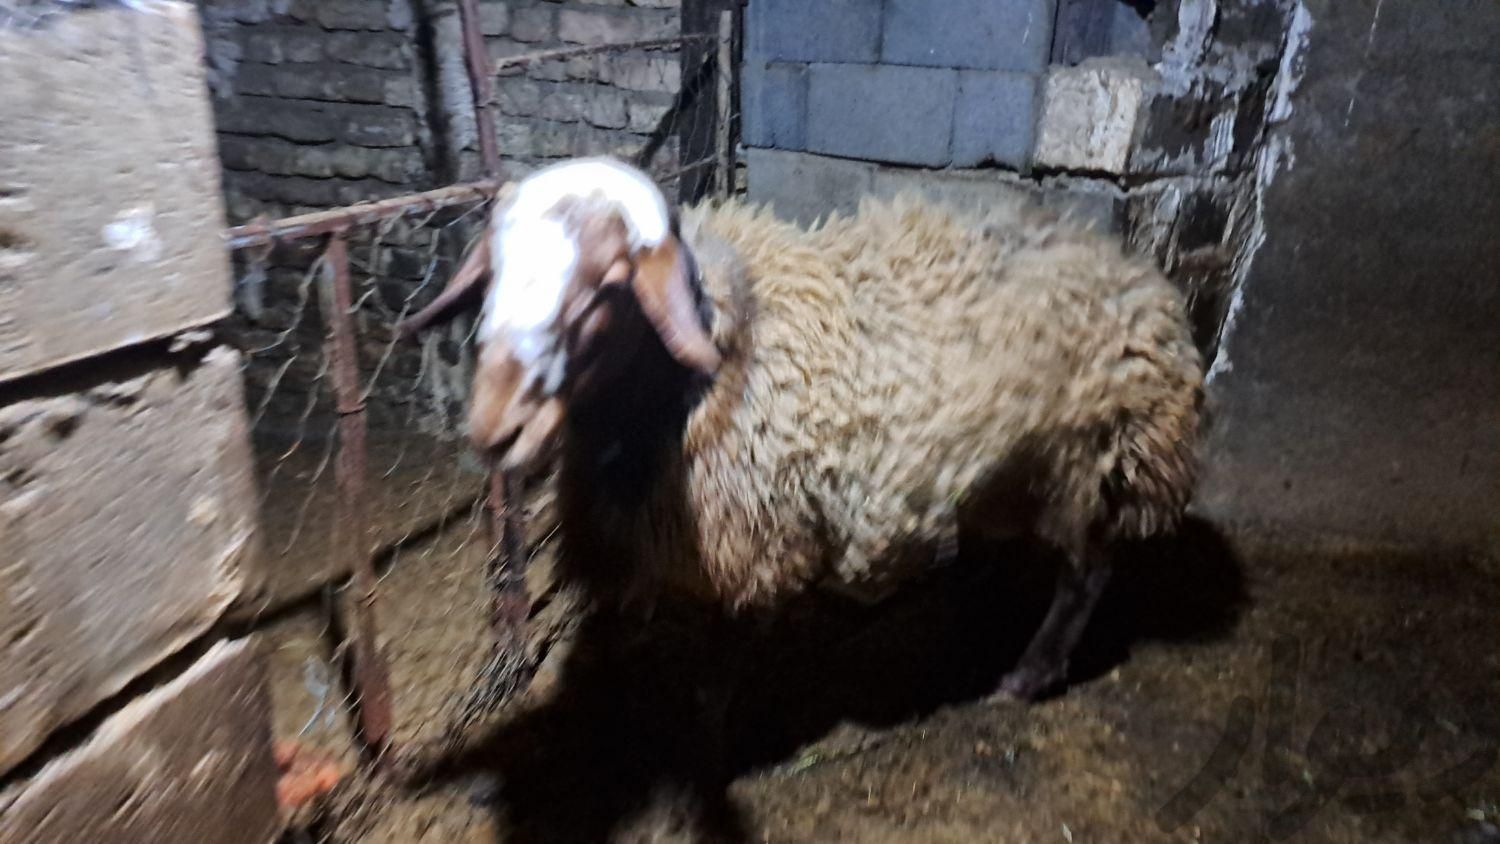 یک راس گوسفند مهربان داشتی|حیوانات مزرعه|تویسرکان, |دیوار